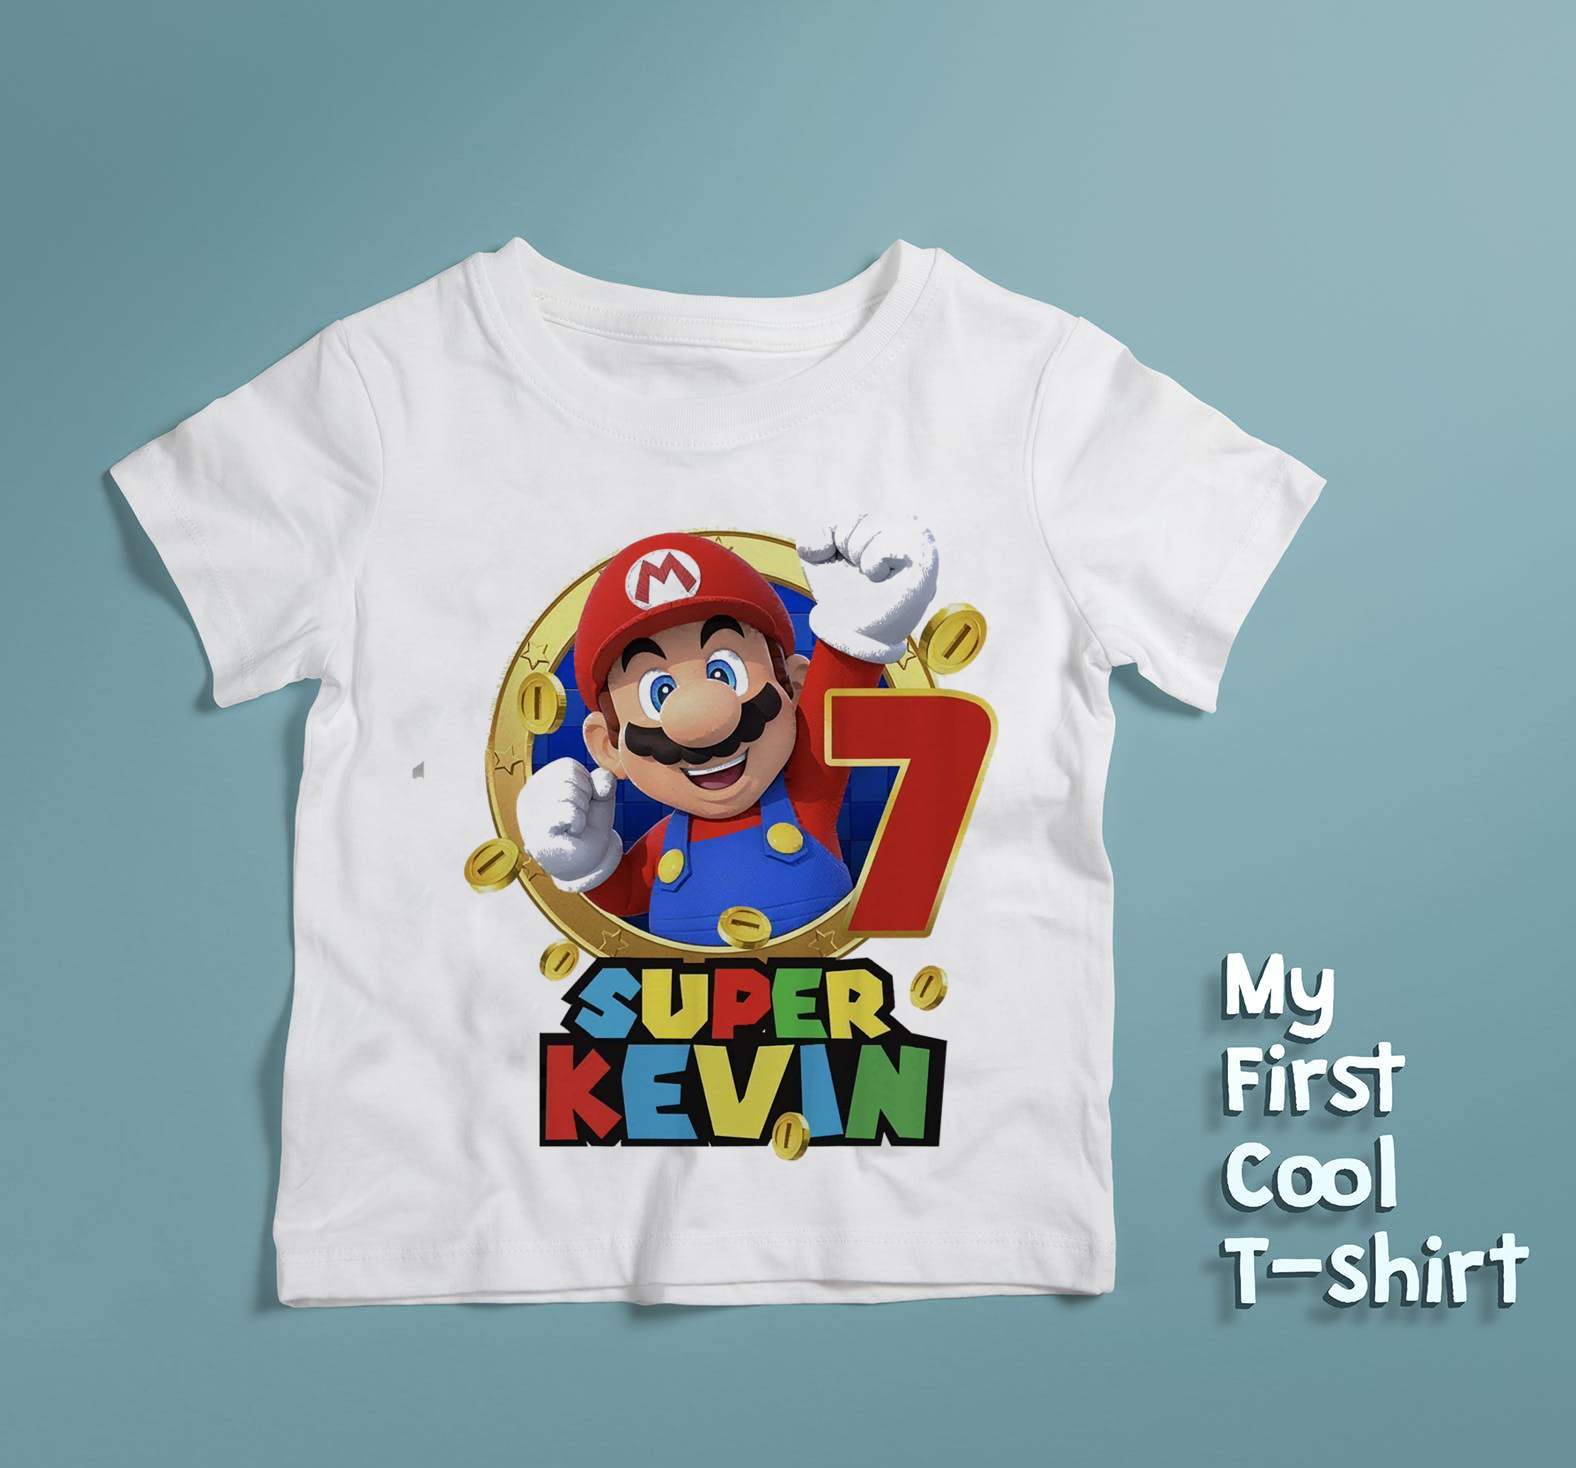 Mario and Luigi Boy's T-Shirt, Custom Birthday Super Mario Shirt, Super mario Personalized shirt